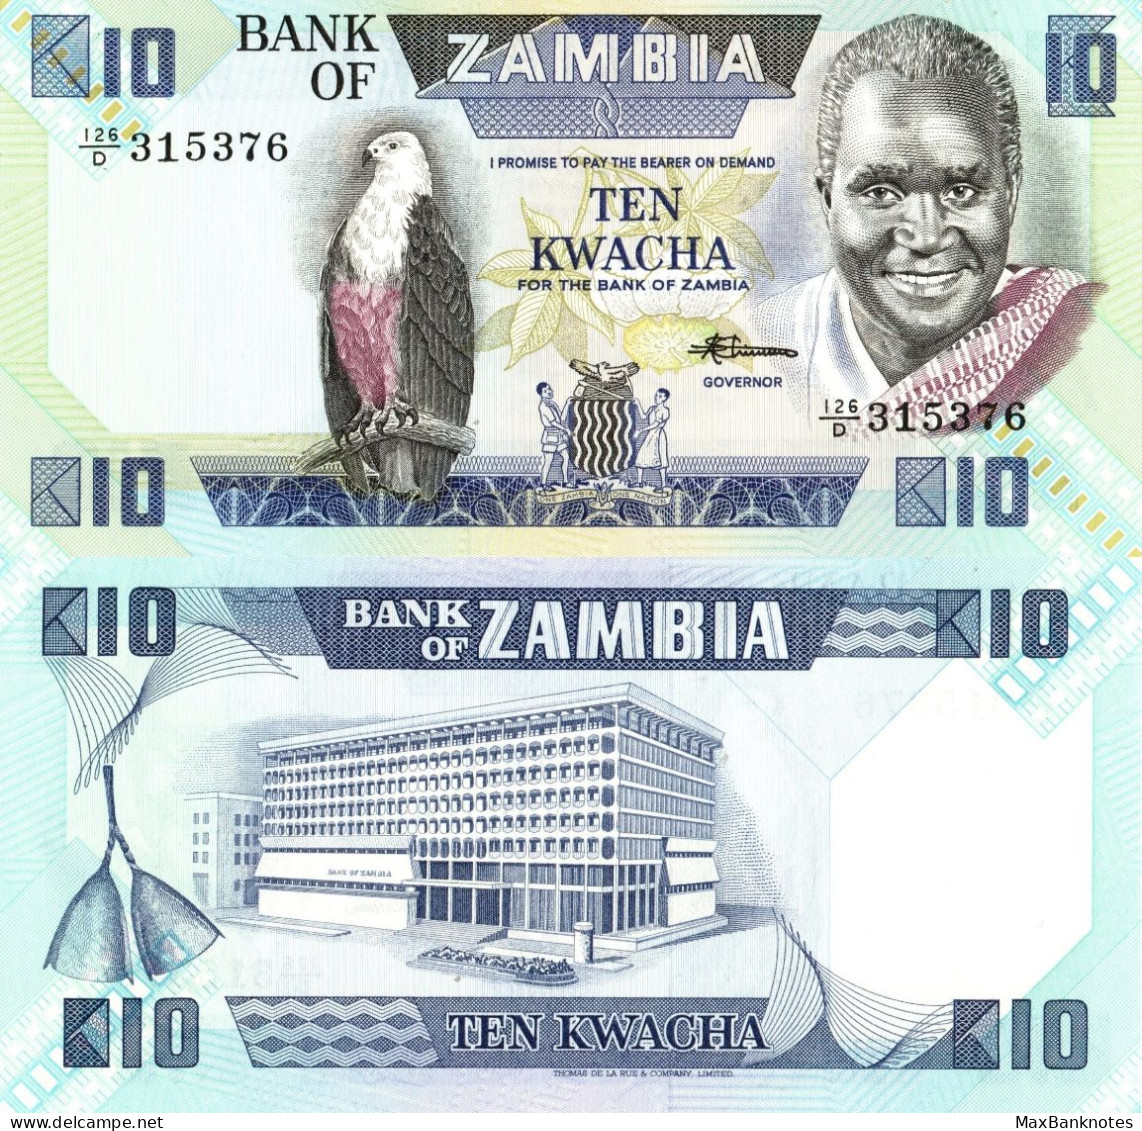 Zambia / 10 Kwacha / 1986 / P-26(e) / UNC - Sambia